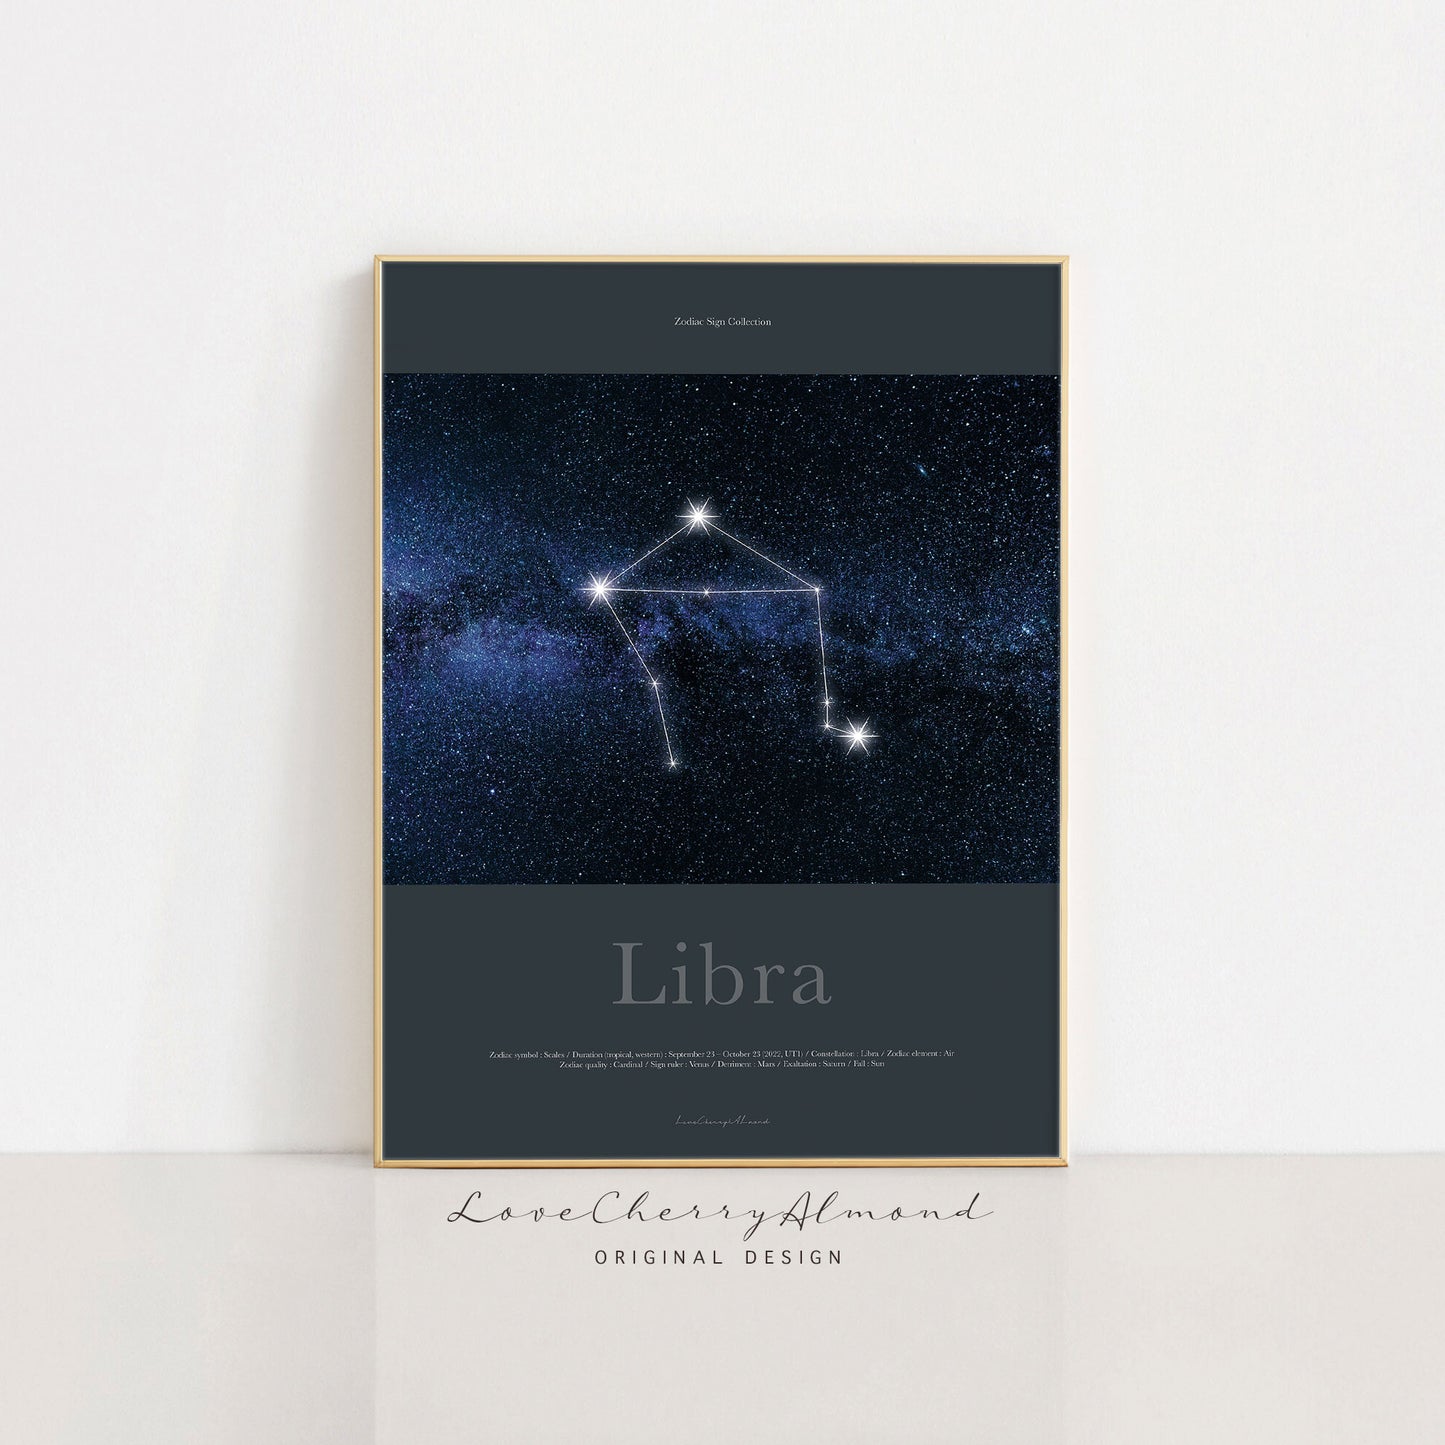 Zodiac Sign Collection "Libra"